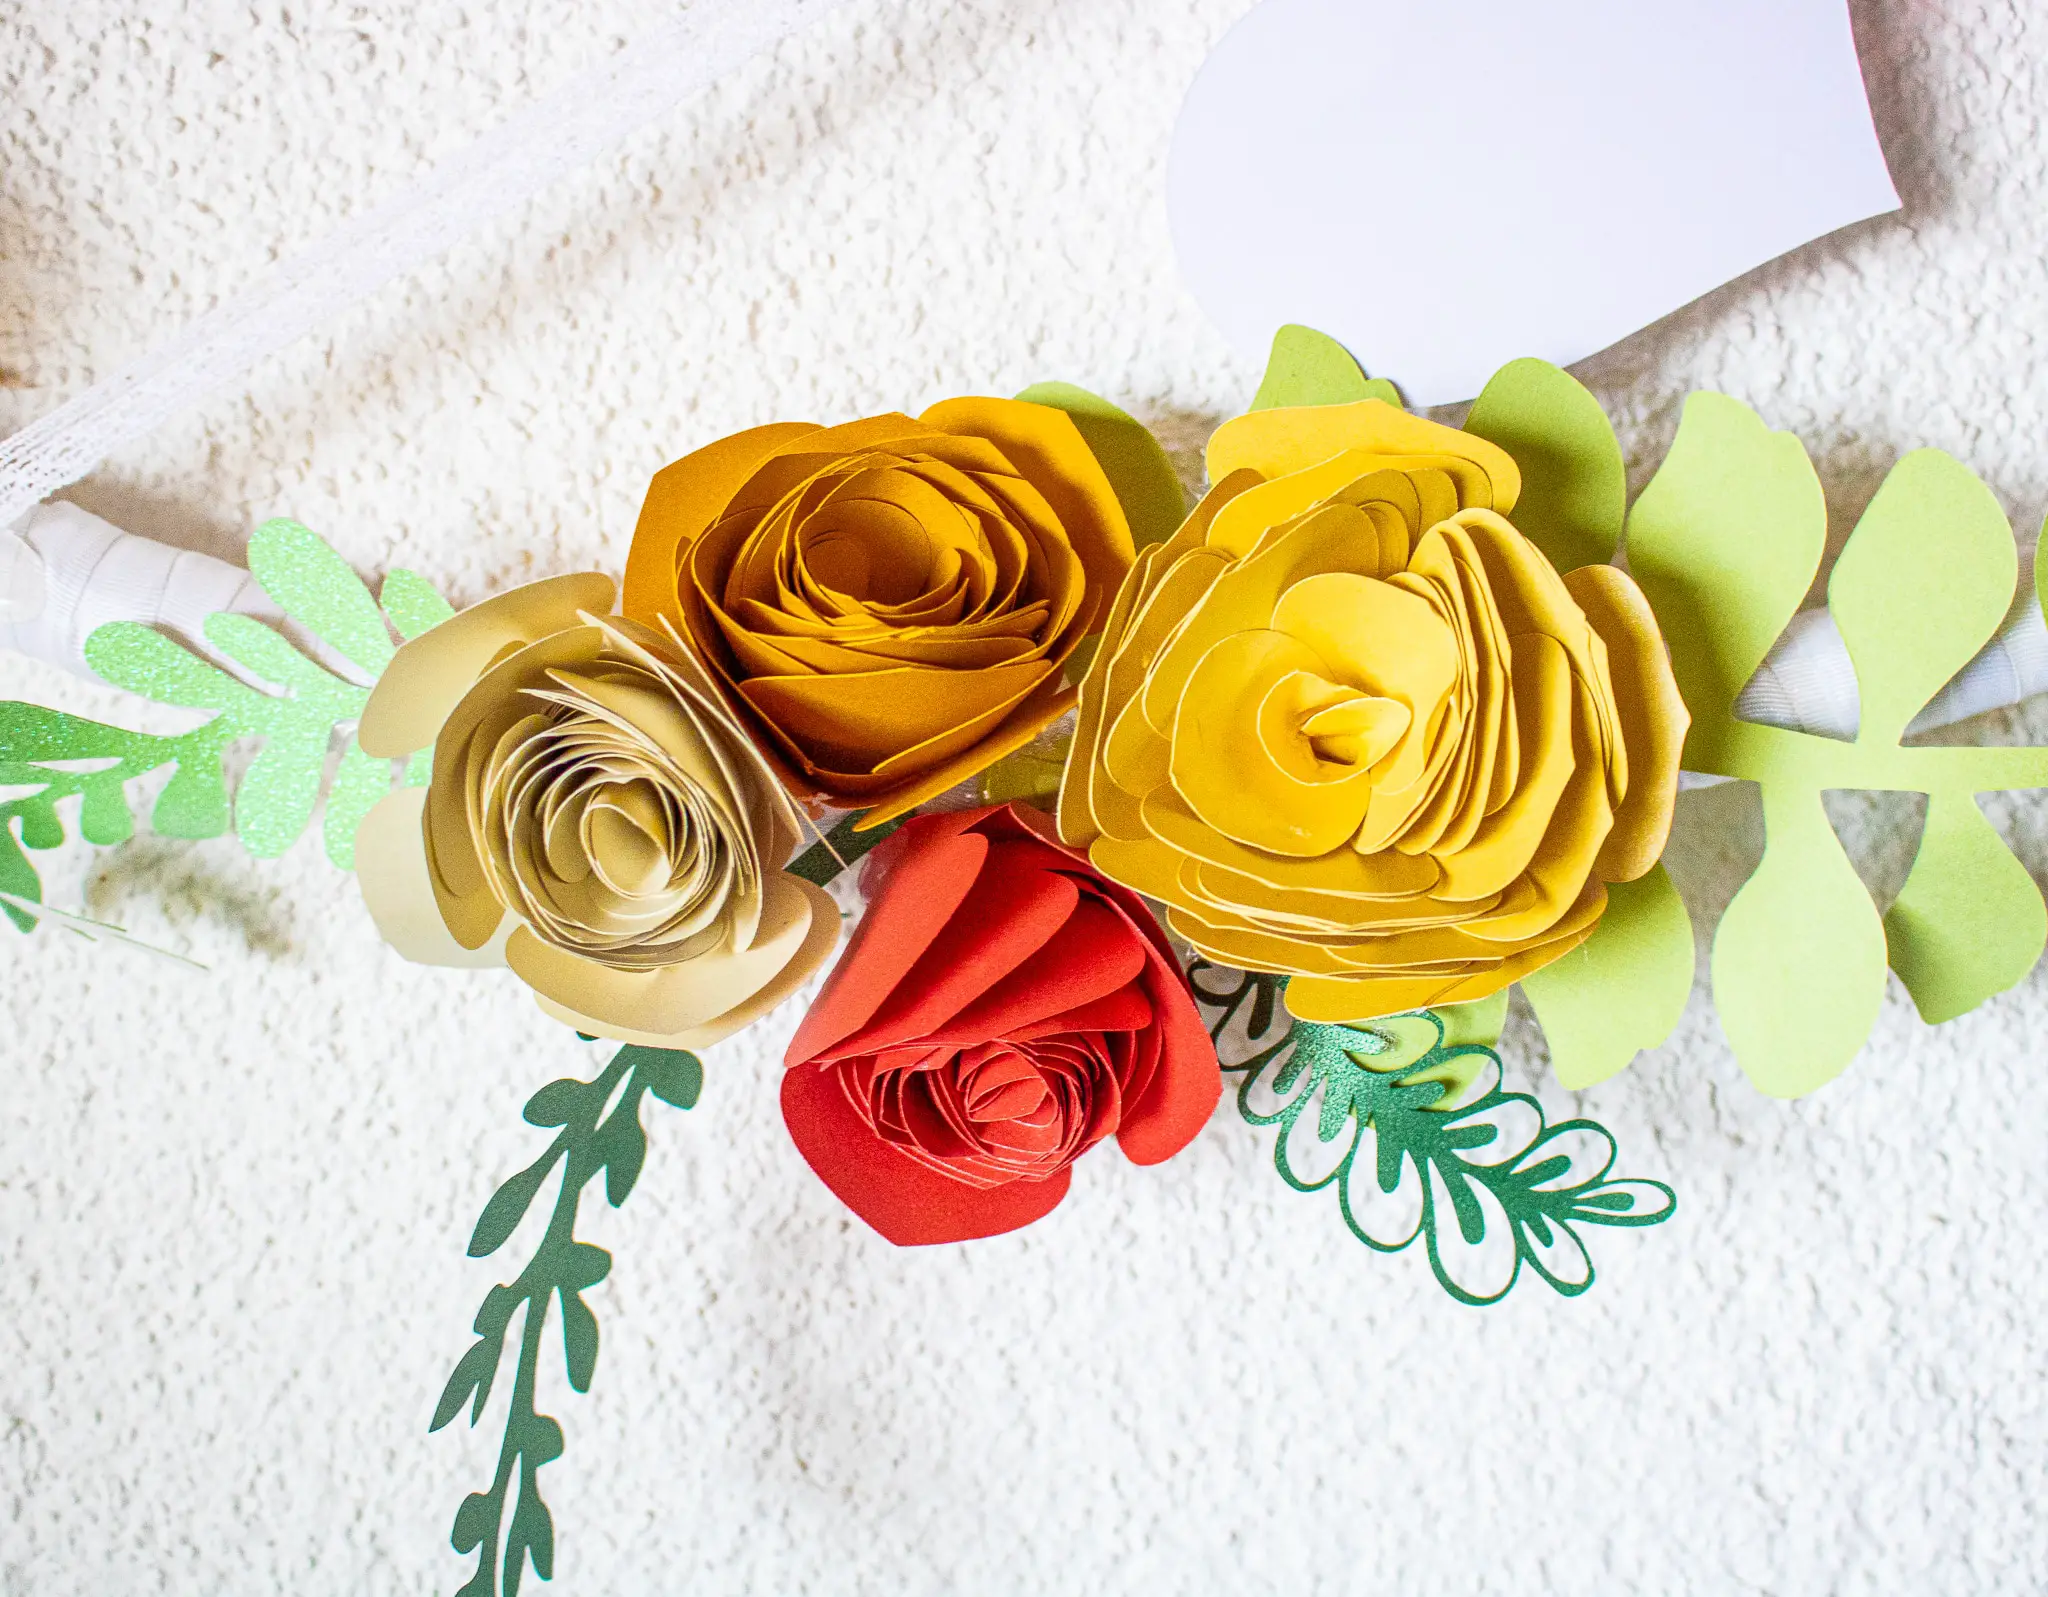 Gästebuch für Hochzeit selber machen mit Papierblumen basteln